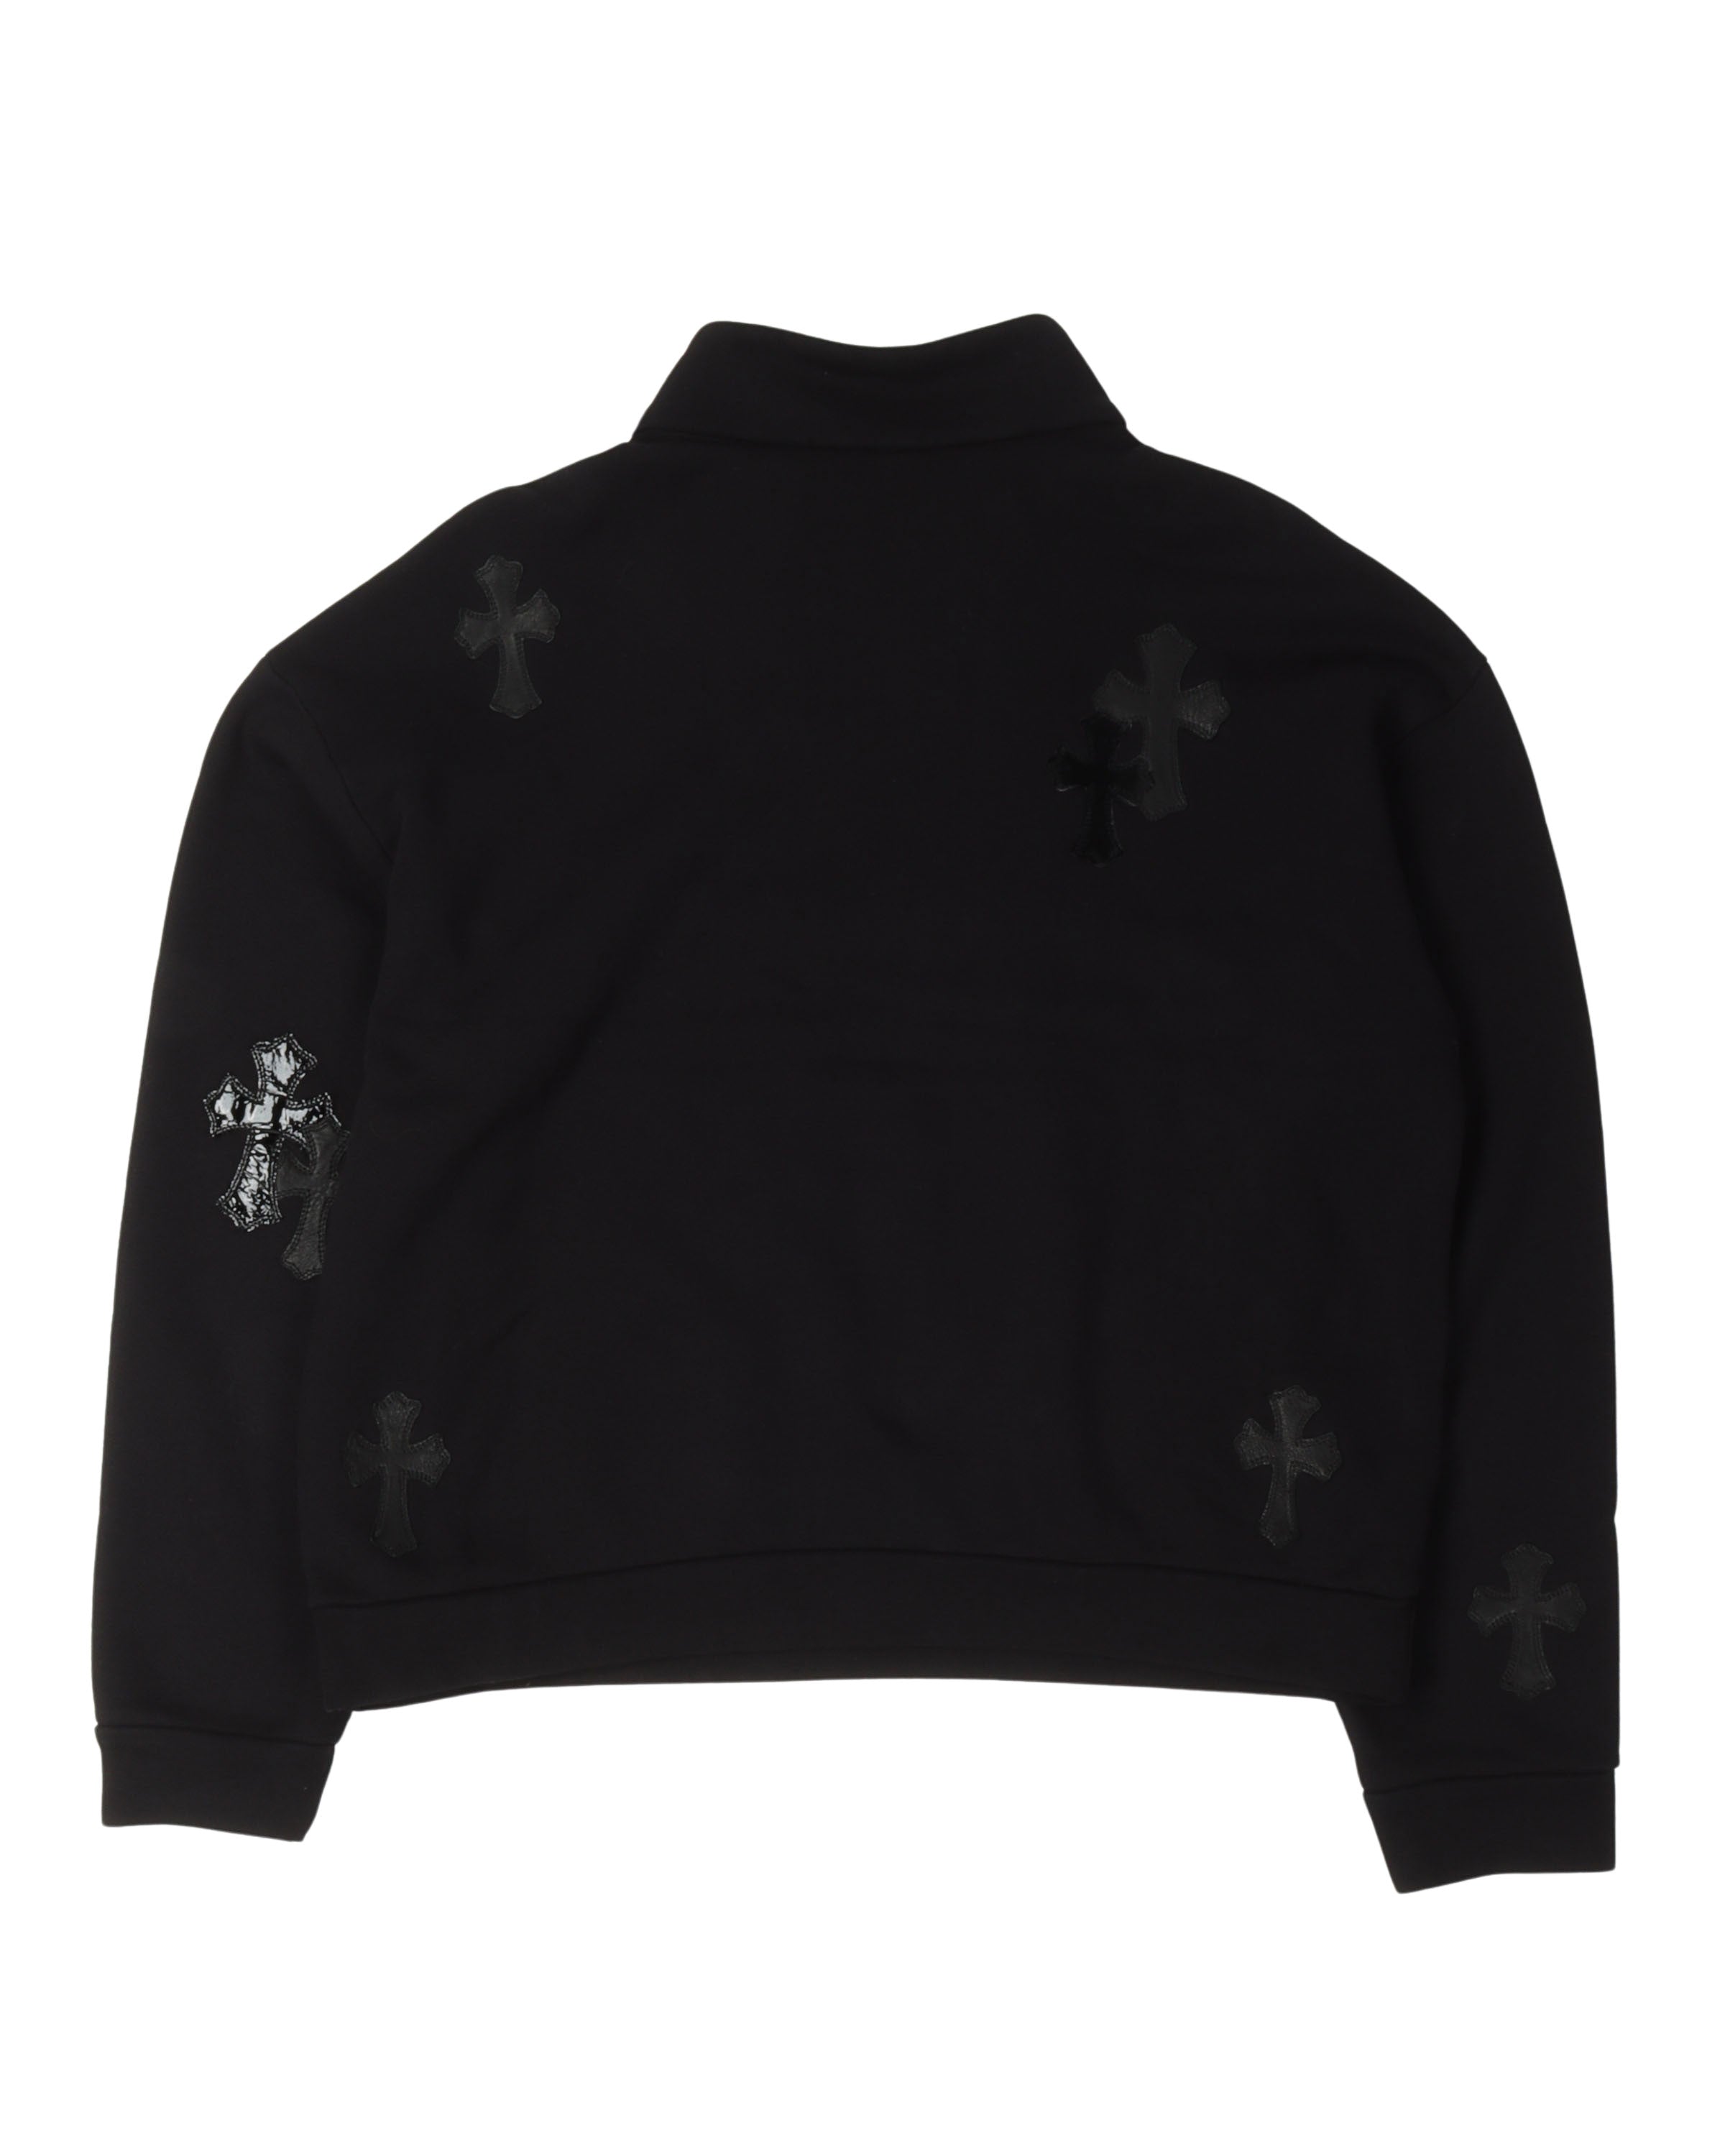 Cross Patch Quarter-Zip Sweatshirt